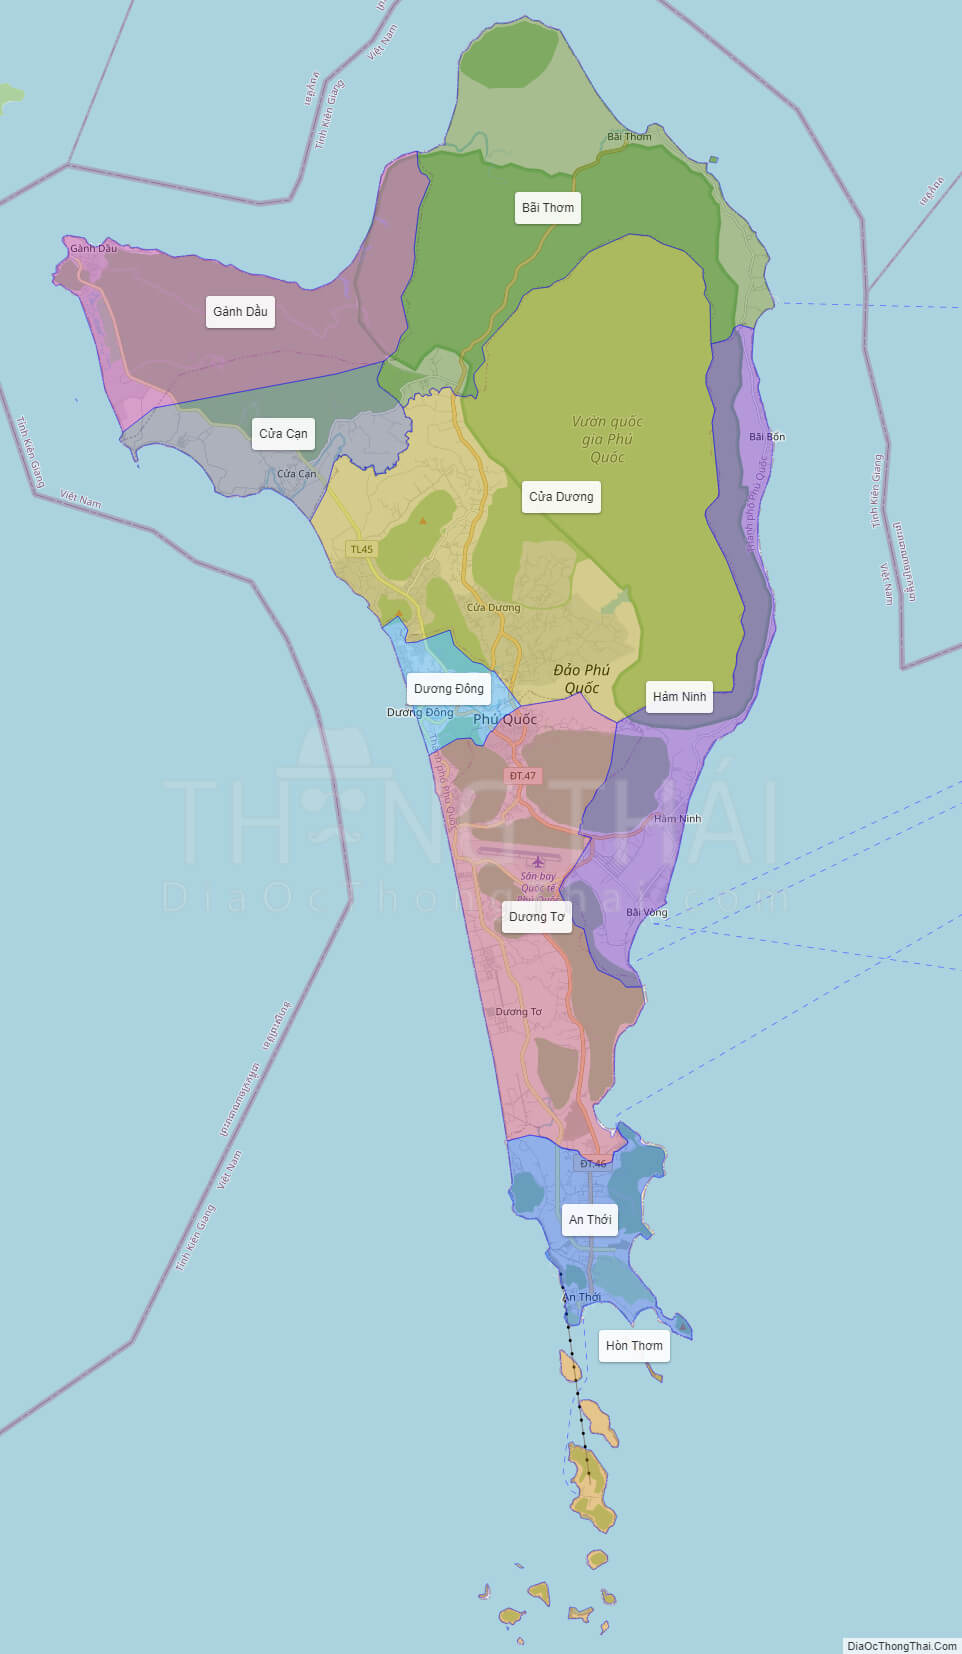 Phú Quốc district map: Bản đồ Phú Quốc sẽ giúp du khách dễ dàng di chuyển và khám phá đảo Ngọc một cách chính xác và thuận tiện hơn. Ngoài ra, bản đồ còn cập nhật chi tiết các địa điểm vui chơi, giải trí và ẩm thực để du khách có thể lựa chọn.